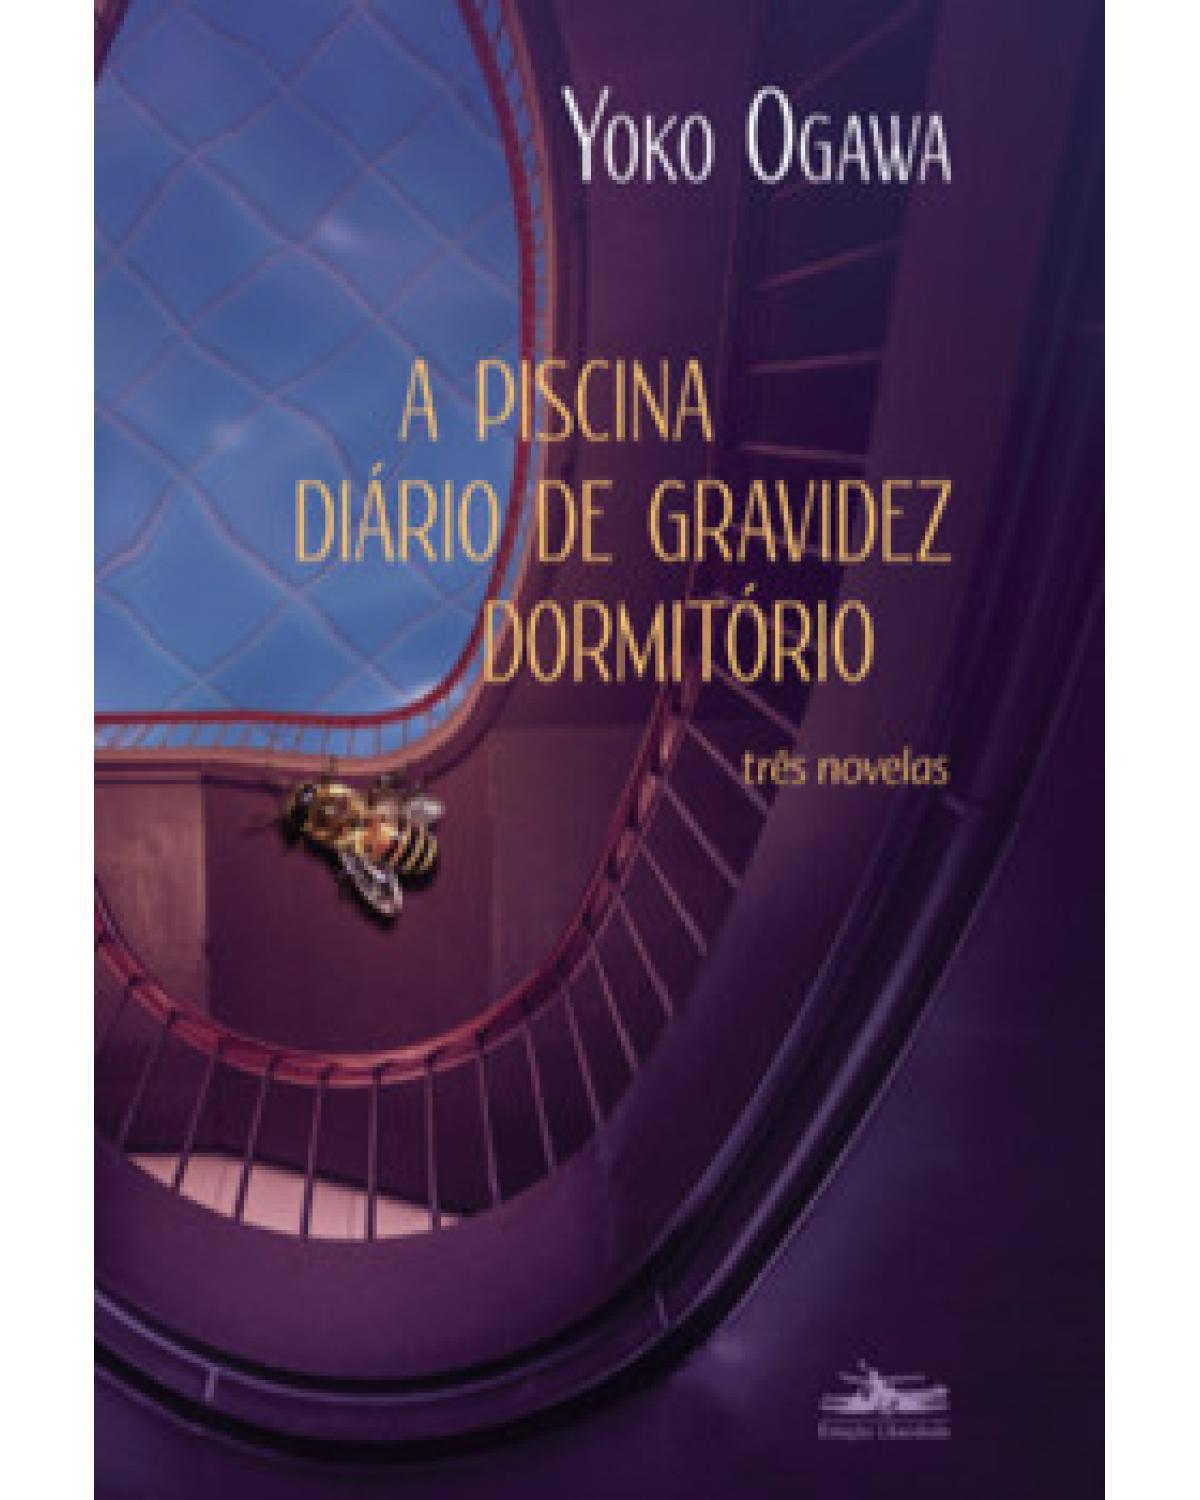 A piscina - Diário de gravidez - Dormitório - três novelas - 1ª Edição | 2023